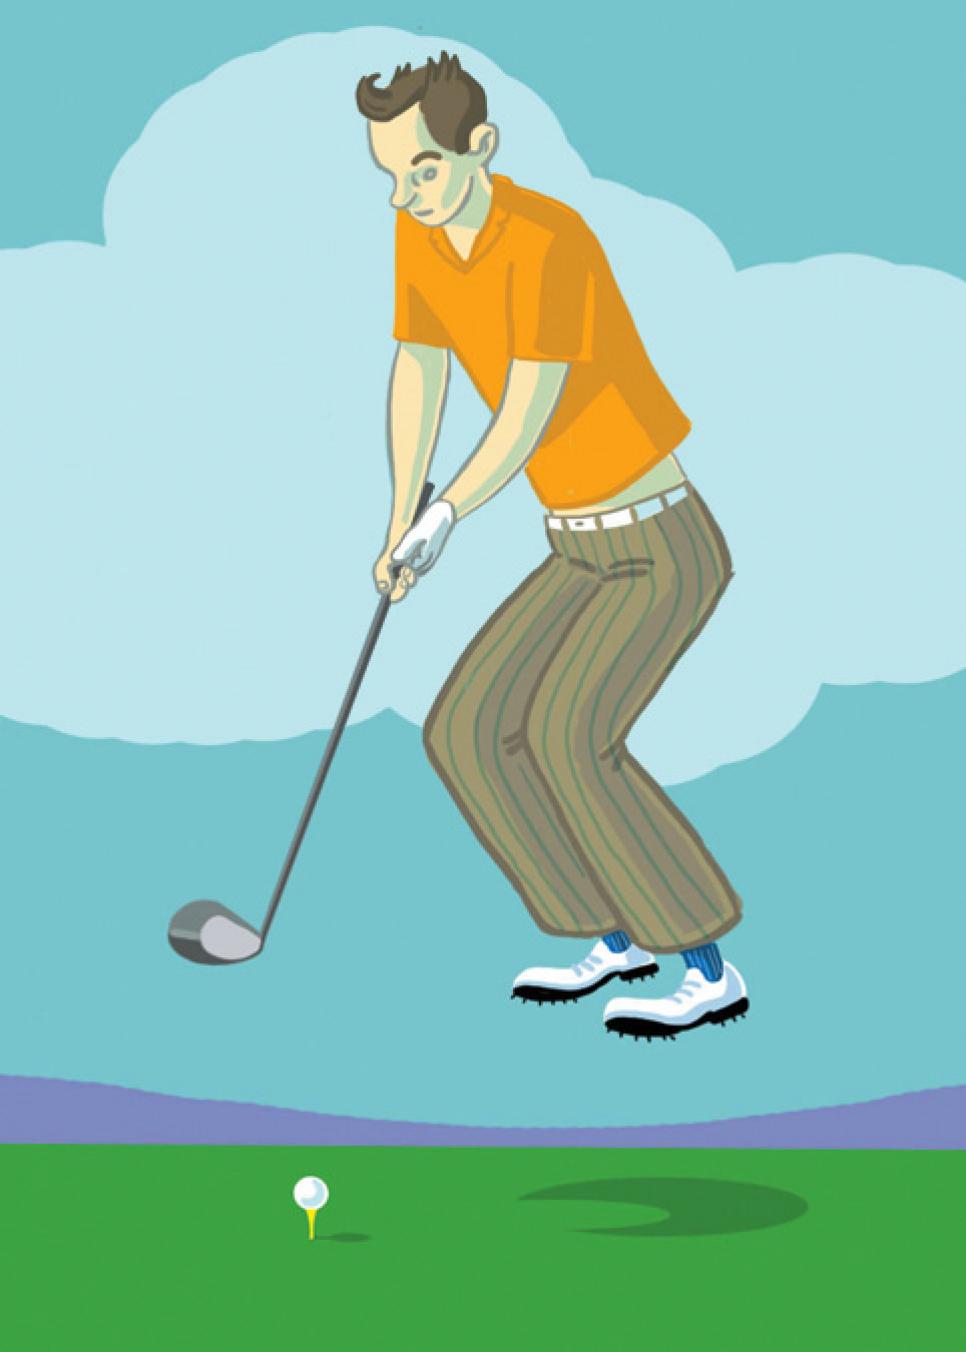 golfer-jumping-illustration.jpg